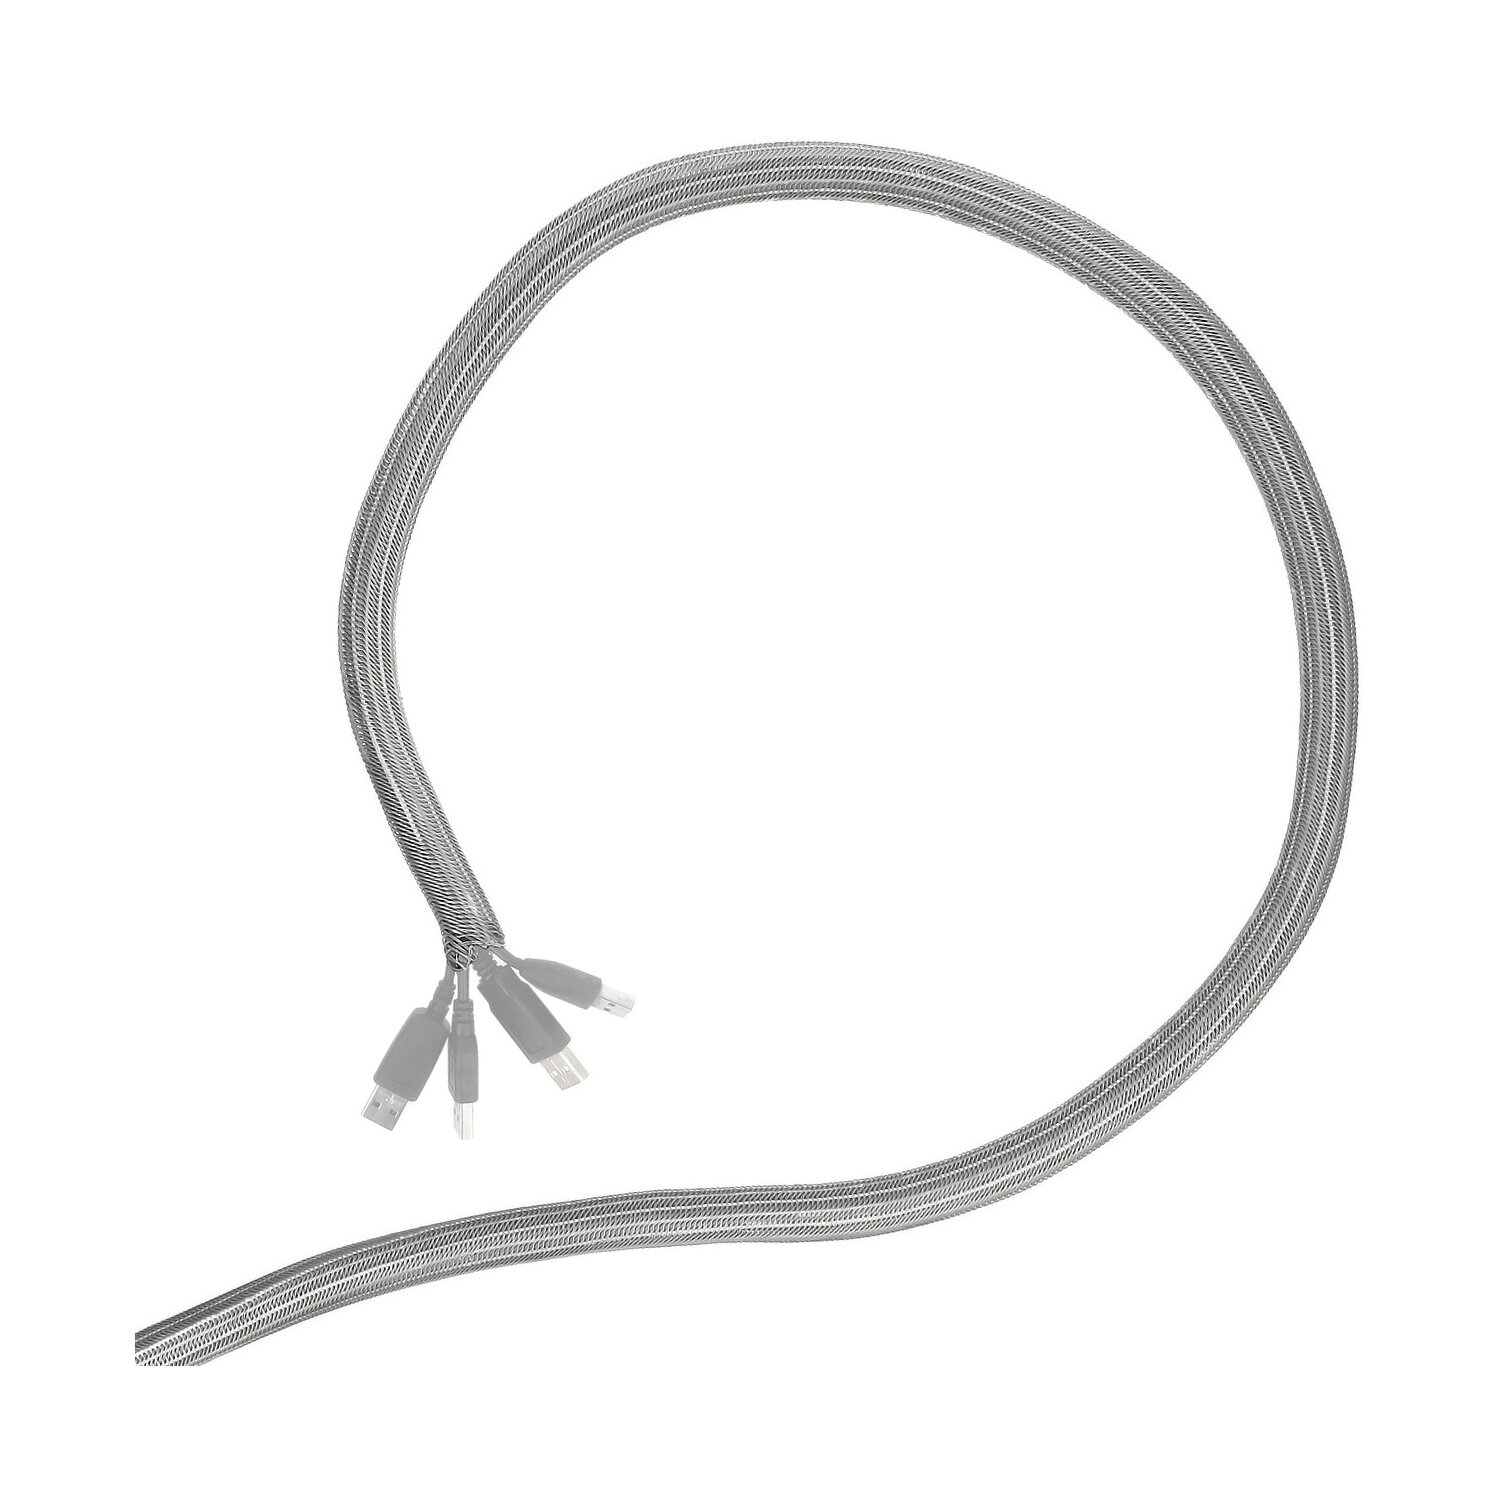 Minadax® gewobener Selbstschließender 3 Meter Profi Kabelschlauch Kabelkanal 16mm Innendurchmesser in grau für flexibles Kabelmanagement